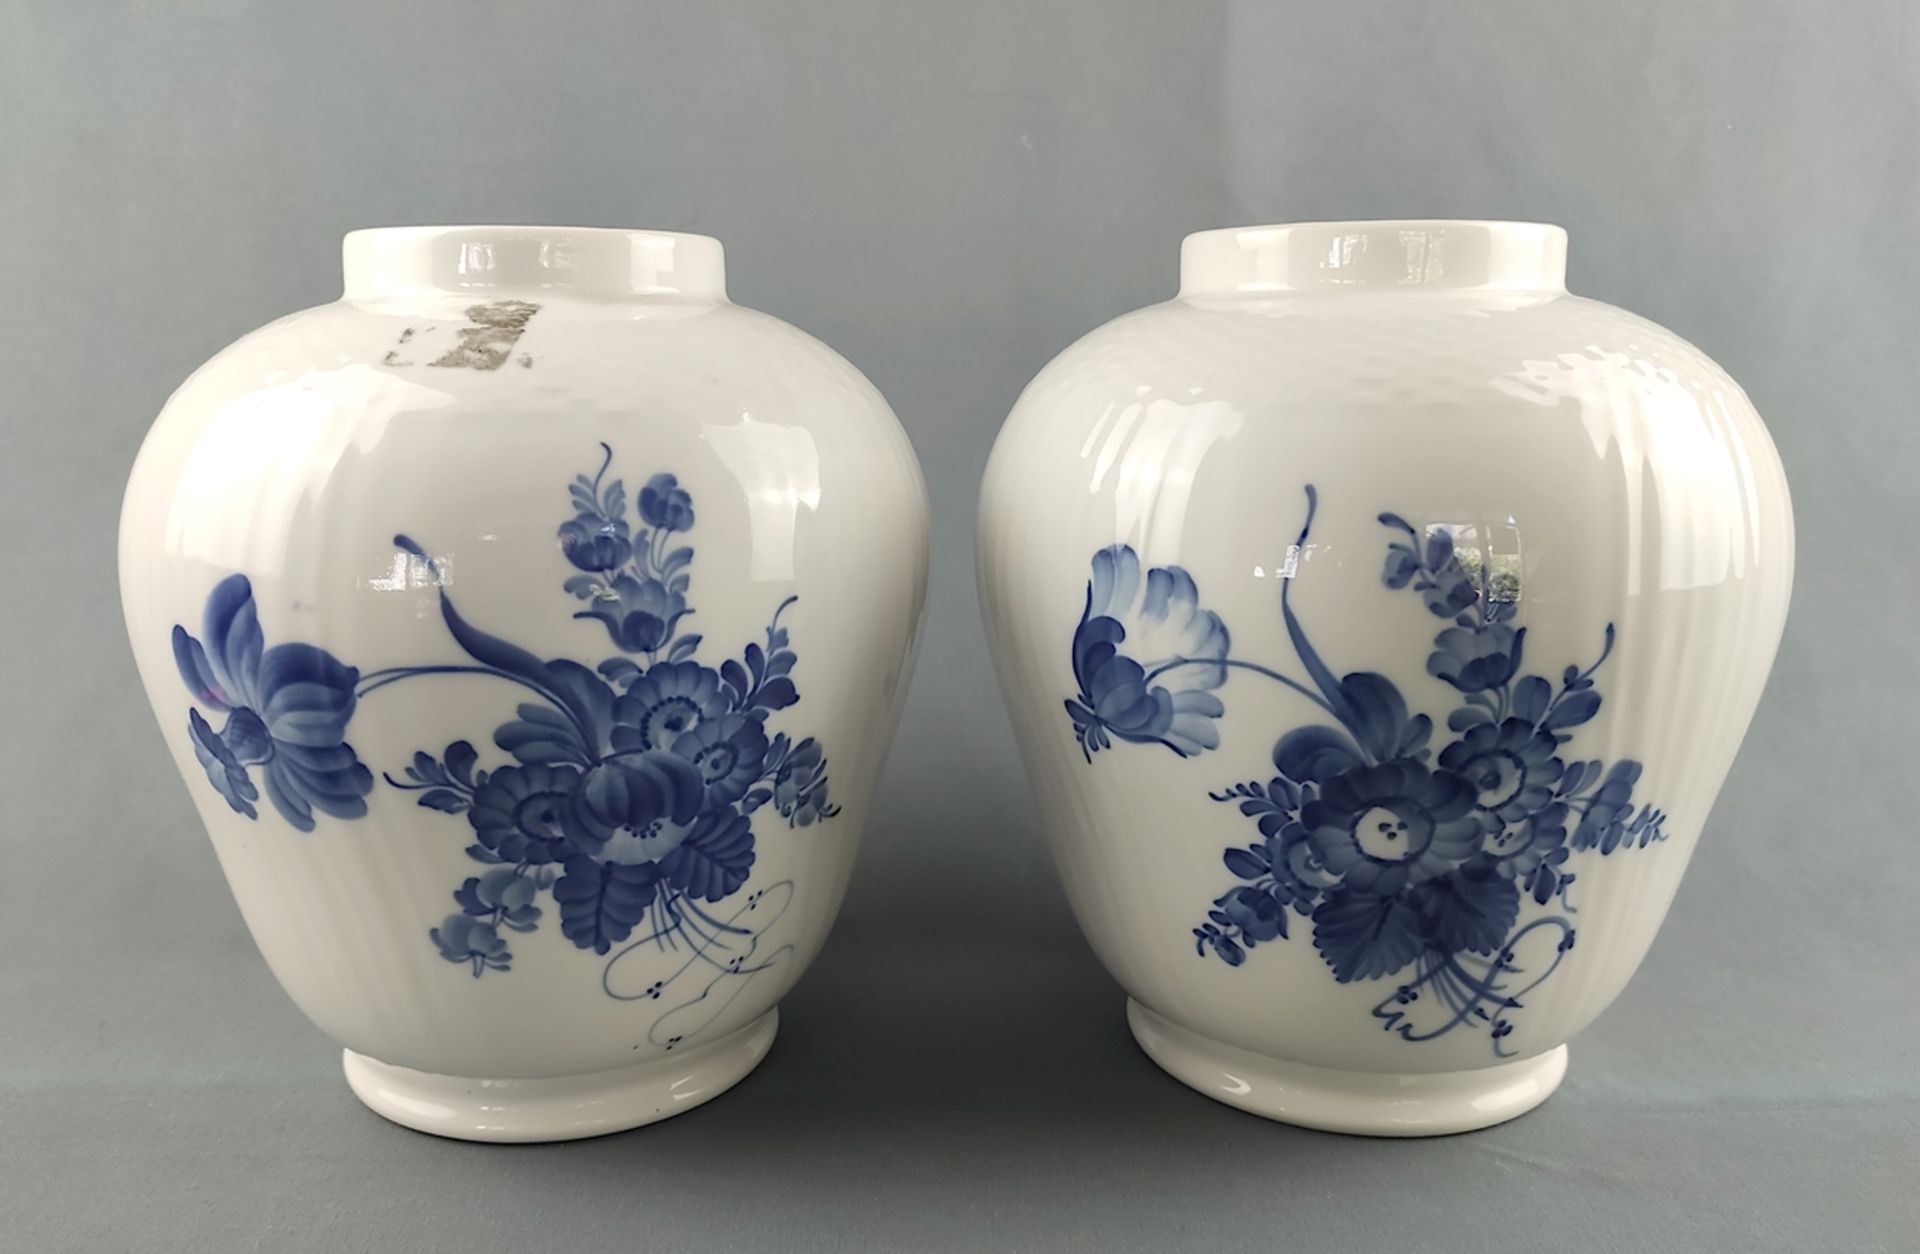 Paar Vasen, Royal Copenhagen, Dekor "Blaue Blume", gerippte Wandung, nach oben hin breiter werdend, - Bild 2 aus 4